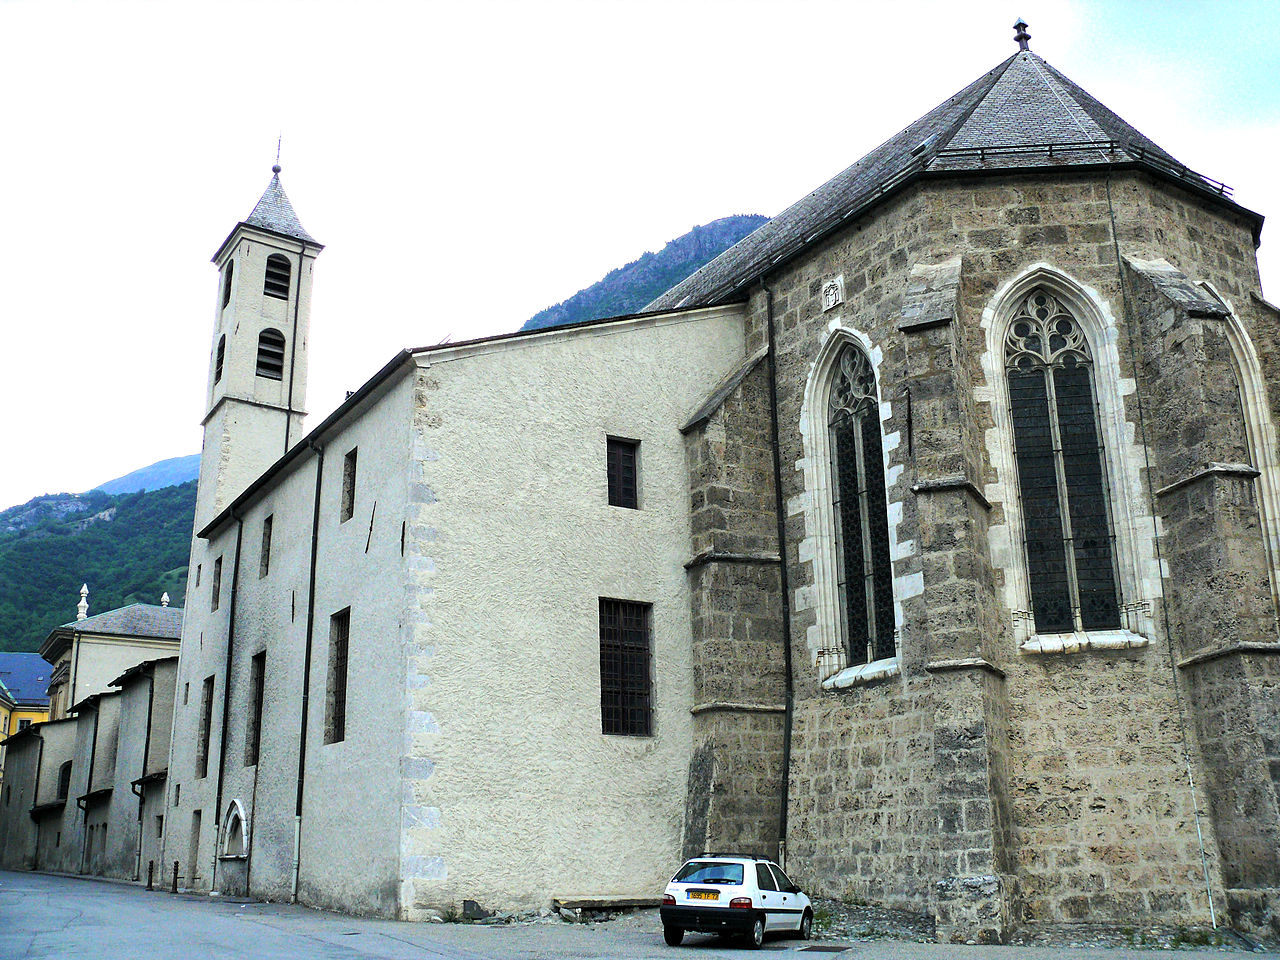 Cathedral Saint-Jean-Baptiste de Saint Jean de Maurienne